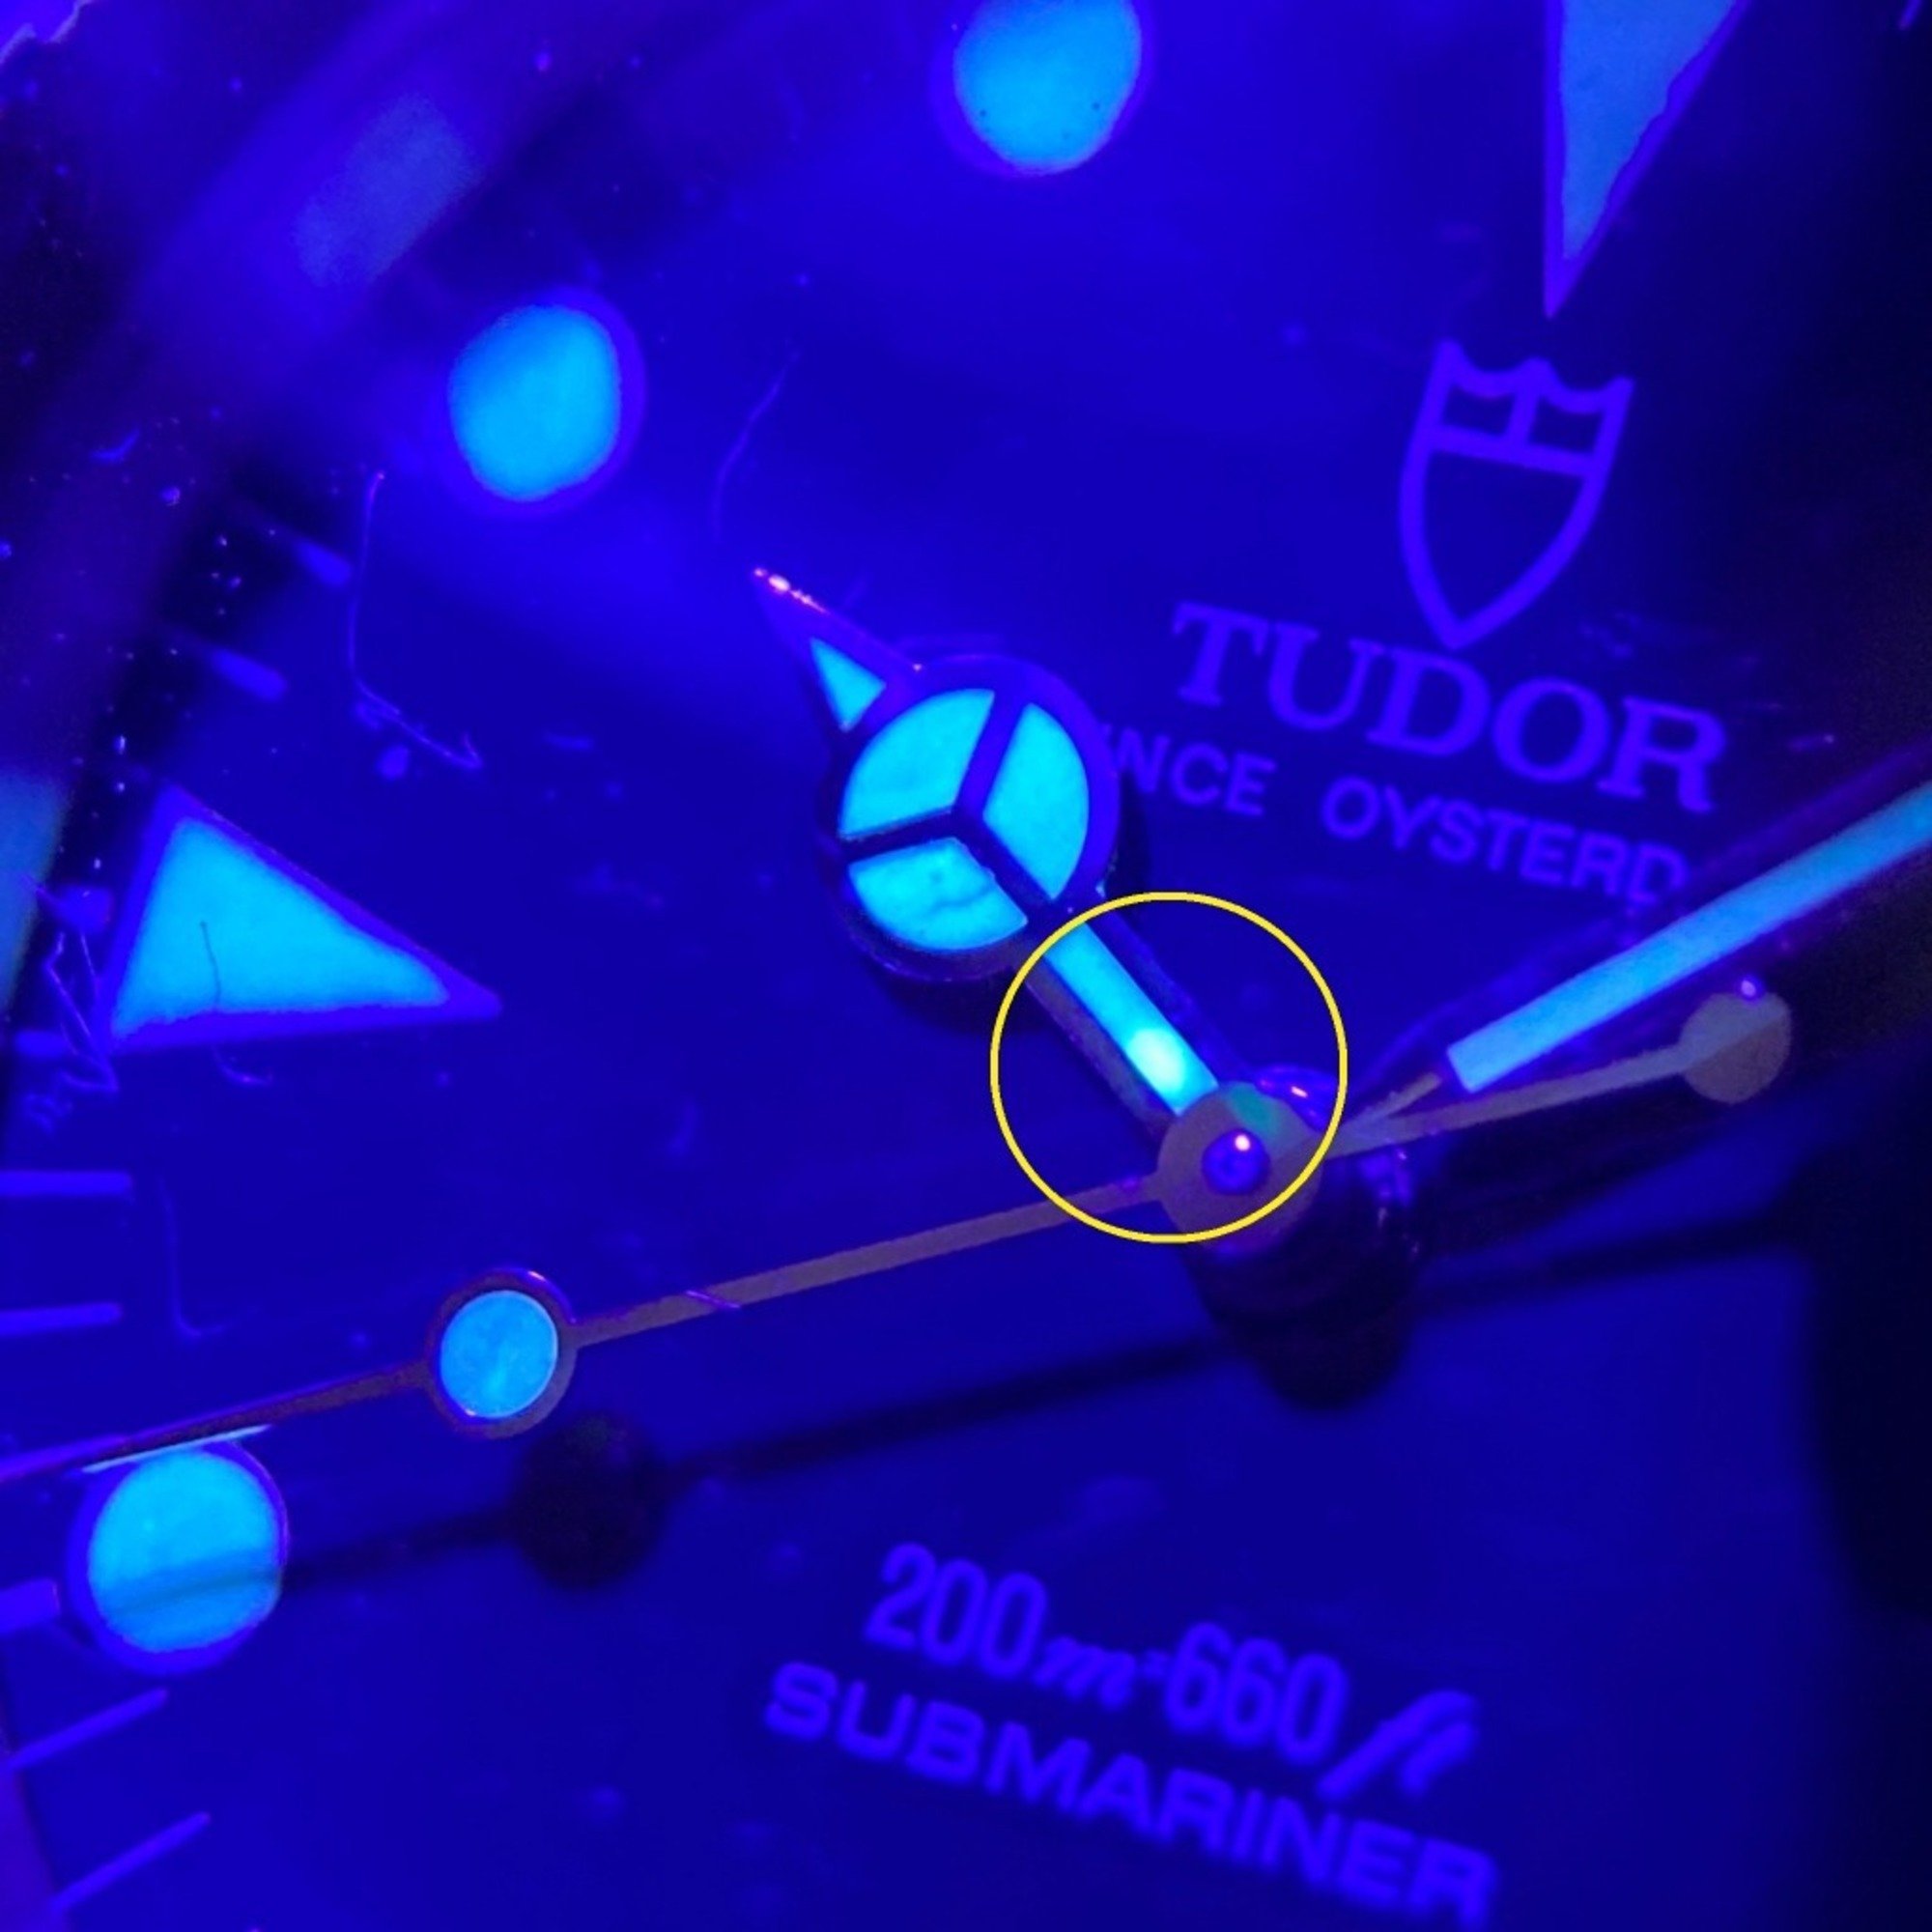 Tudor Submariner Blue Men's Watch